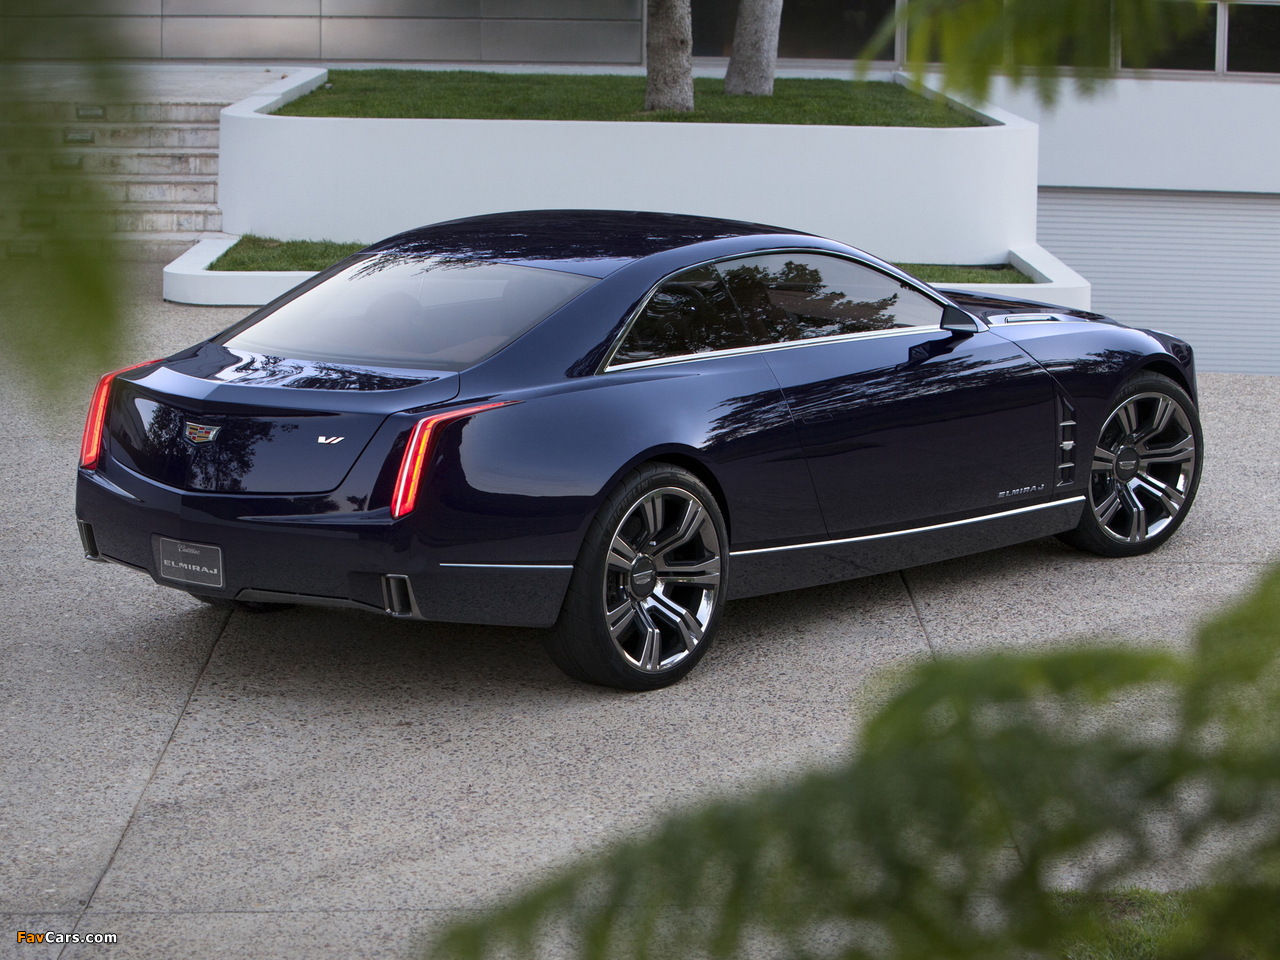 Cadillac Elmiraj Concept 2013 photos (1280 x 960)